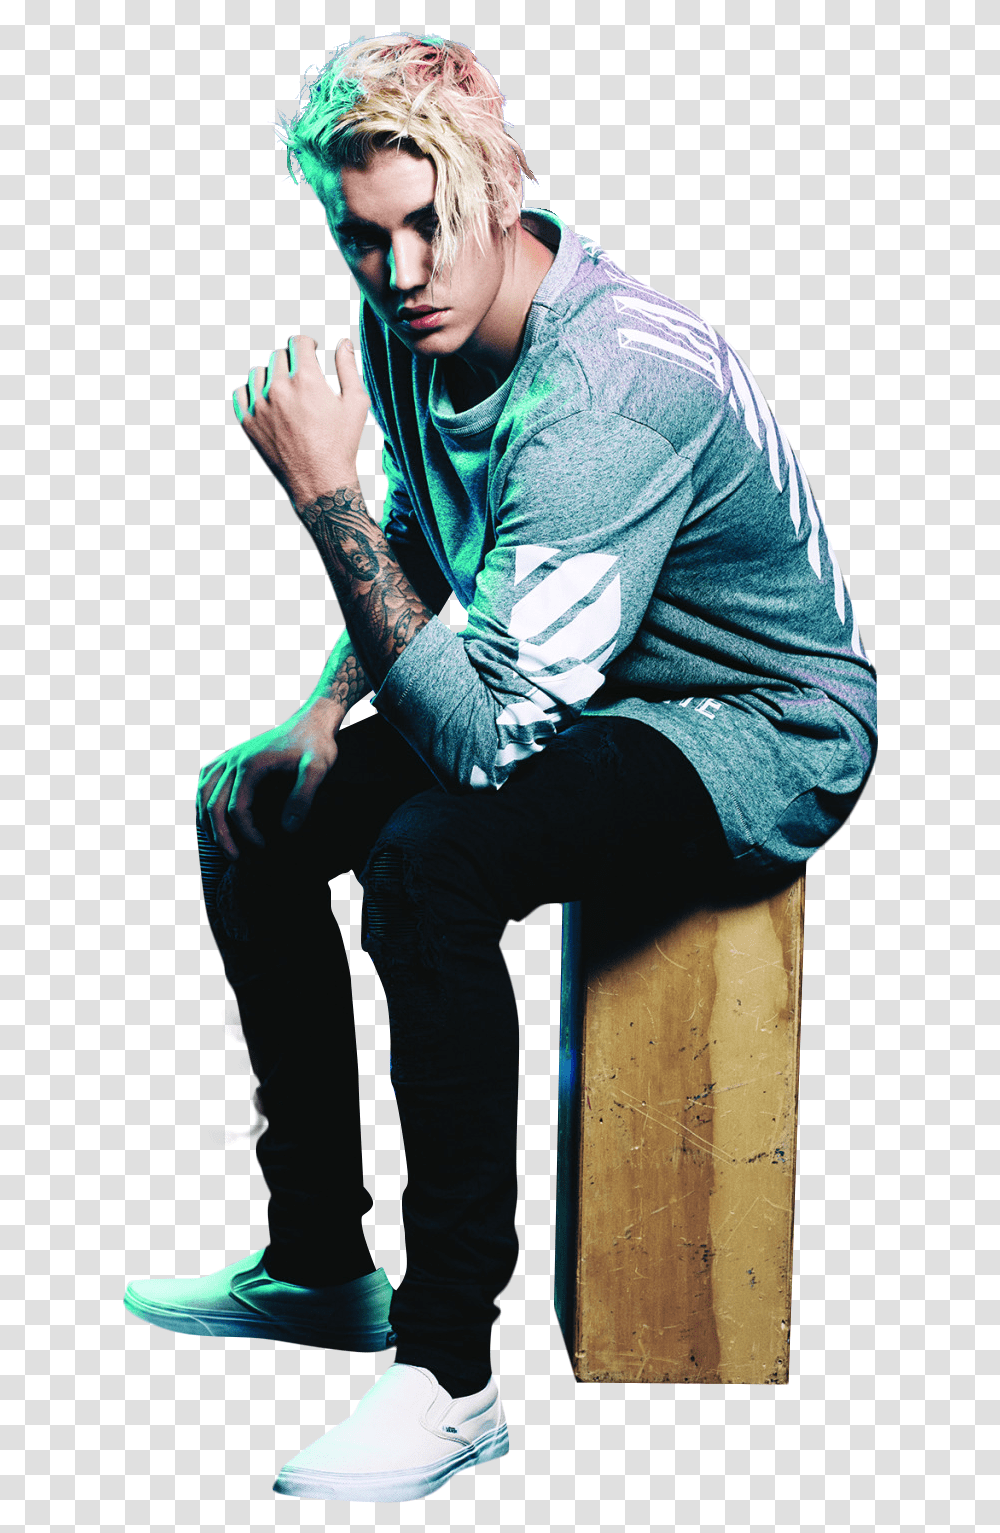 Justin Bieber Green Light Justin Bieber Images Hd, Skin, Shoe, Footwear Transparent Png